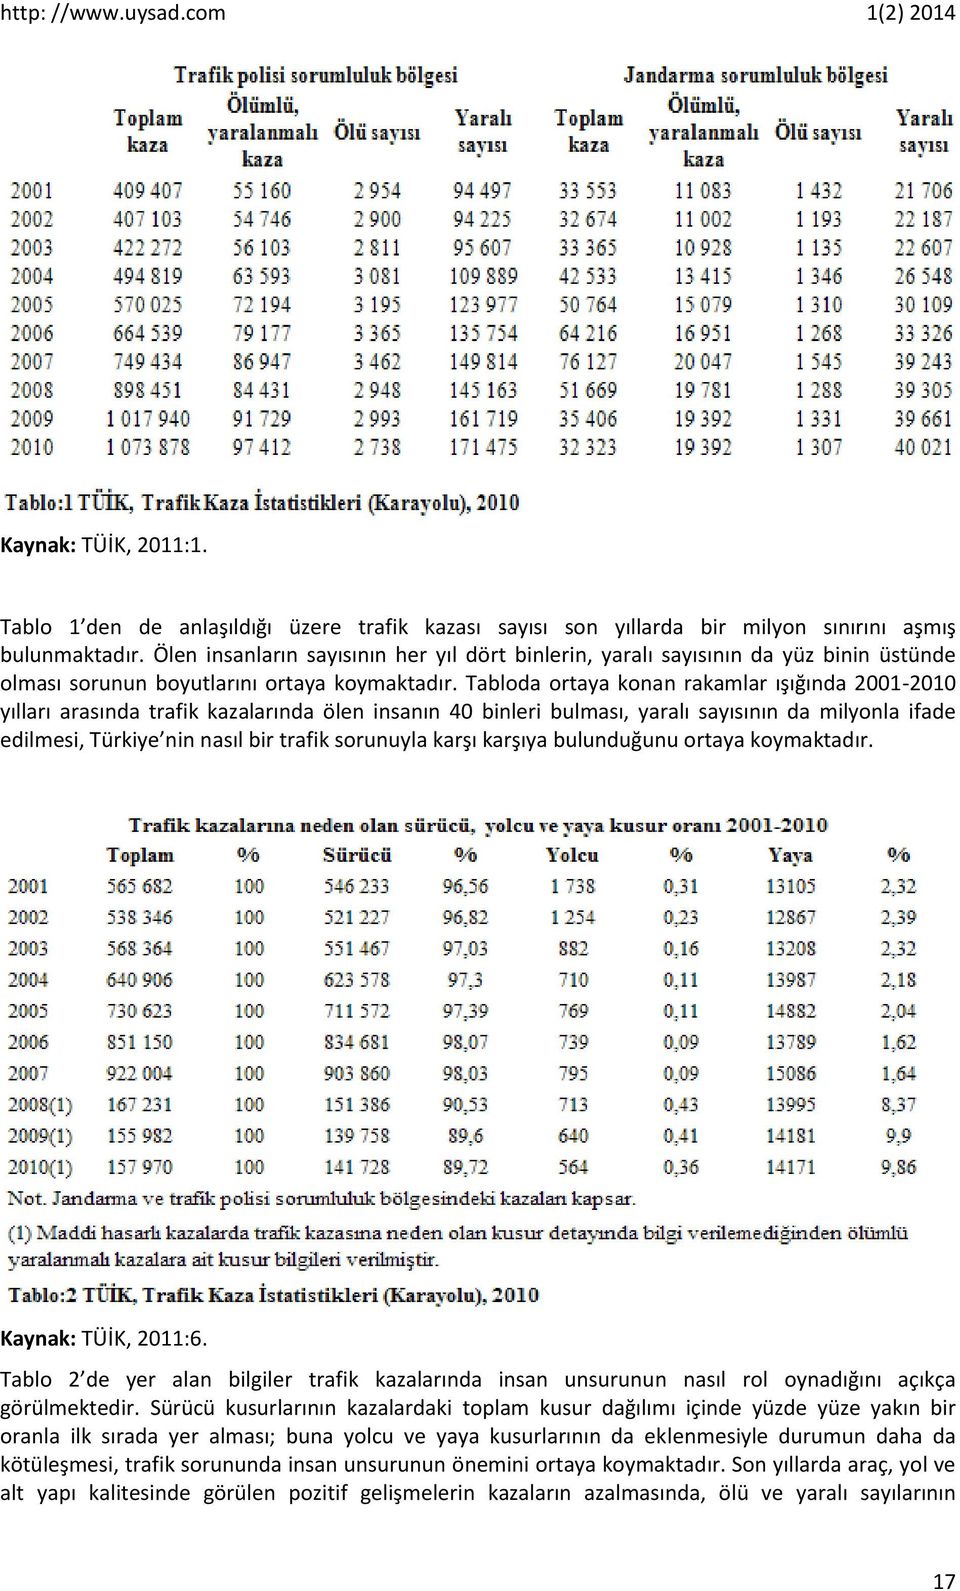 Tabloda ortaya konan rakamlar ışığında 2001-2010 yılları arasında trafik kazalarında ölen insanın 40 binleri bulması, yaralı sayısının da milyonla ifade edilmesi, Türkiye nin nasıl bir trafik